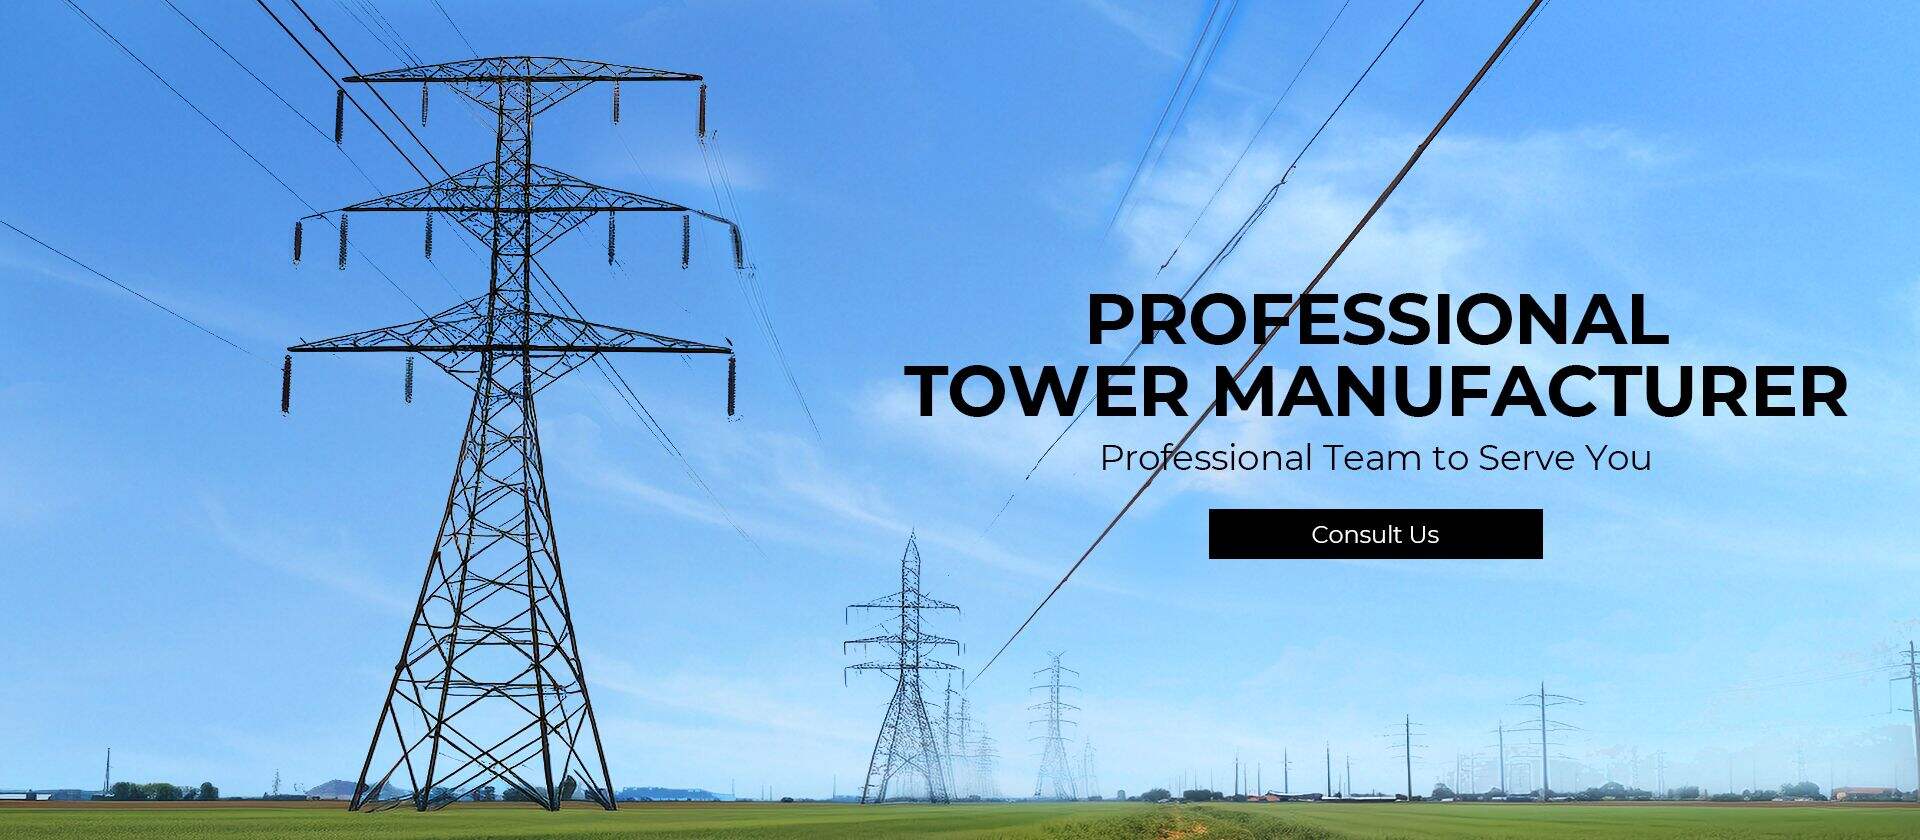 Xinhang Tower Technology Co., Ltd.